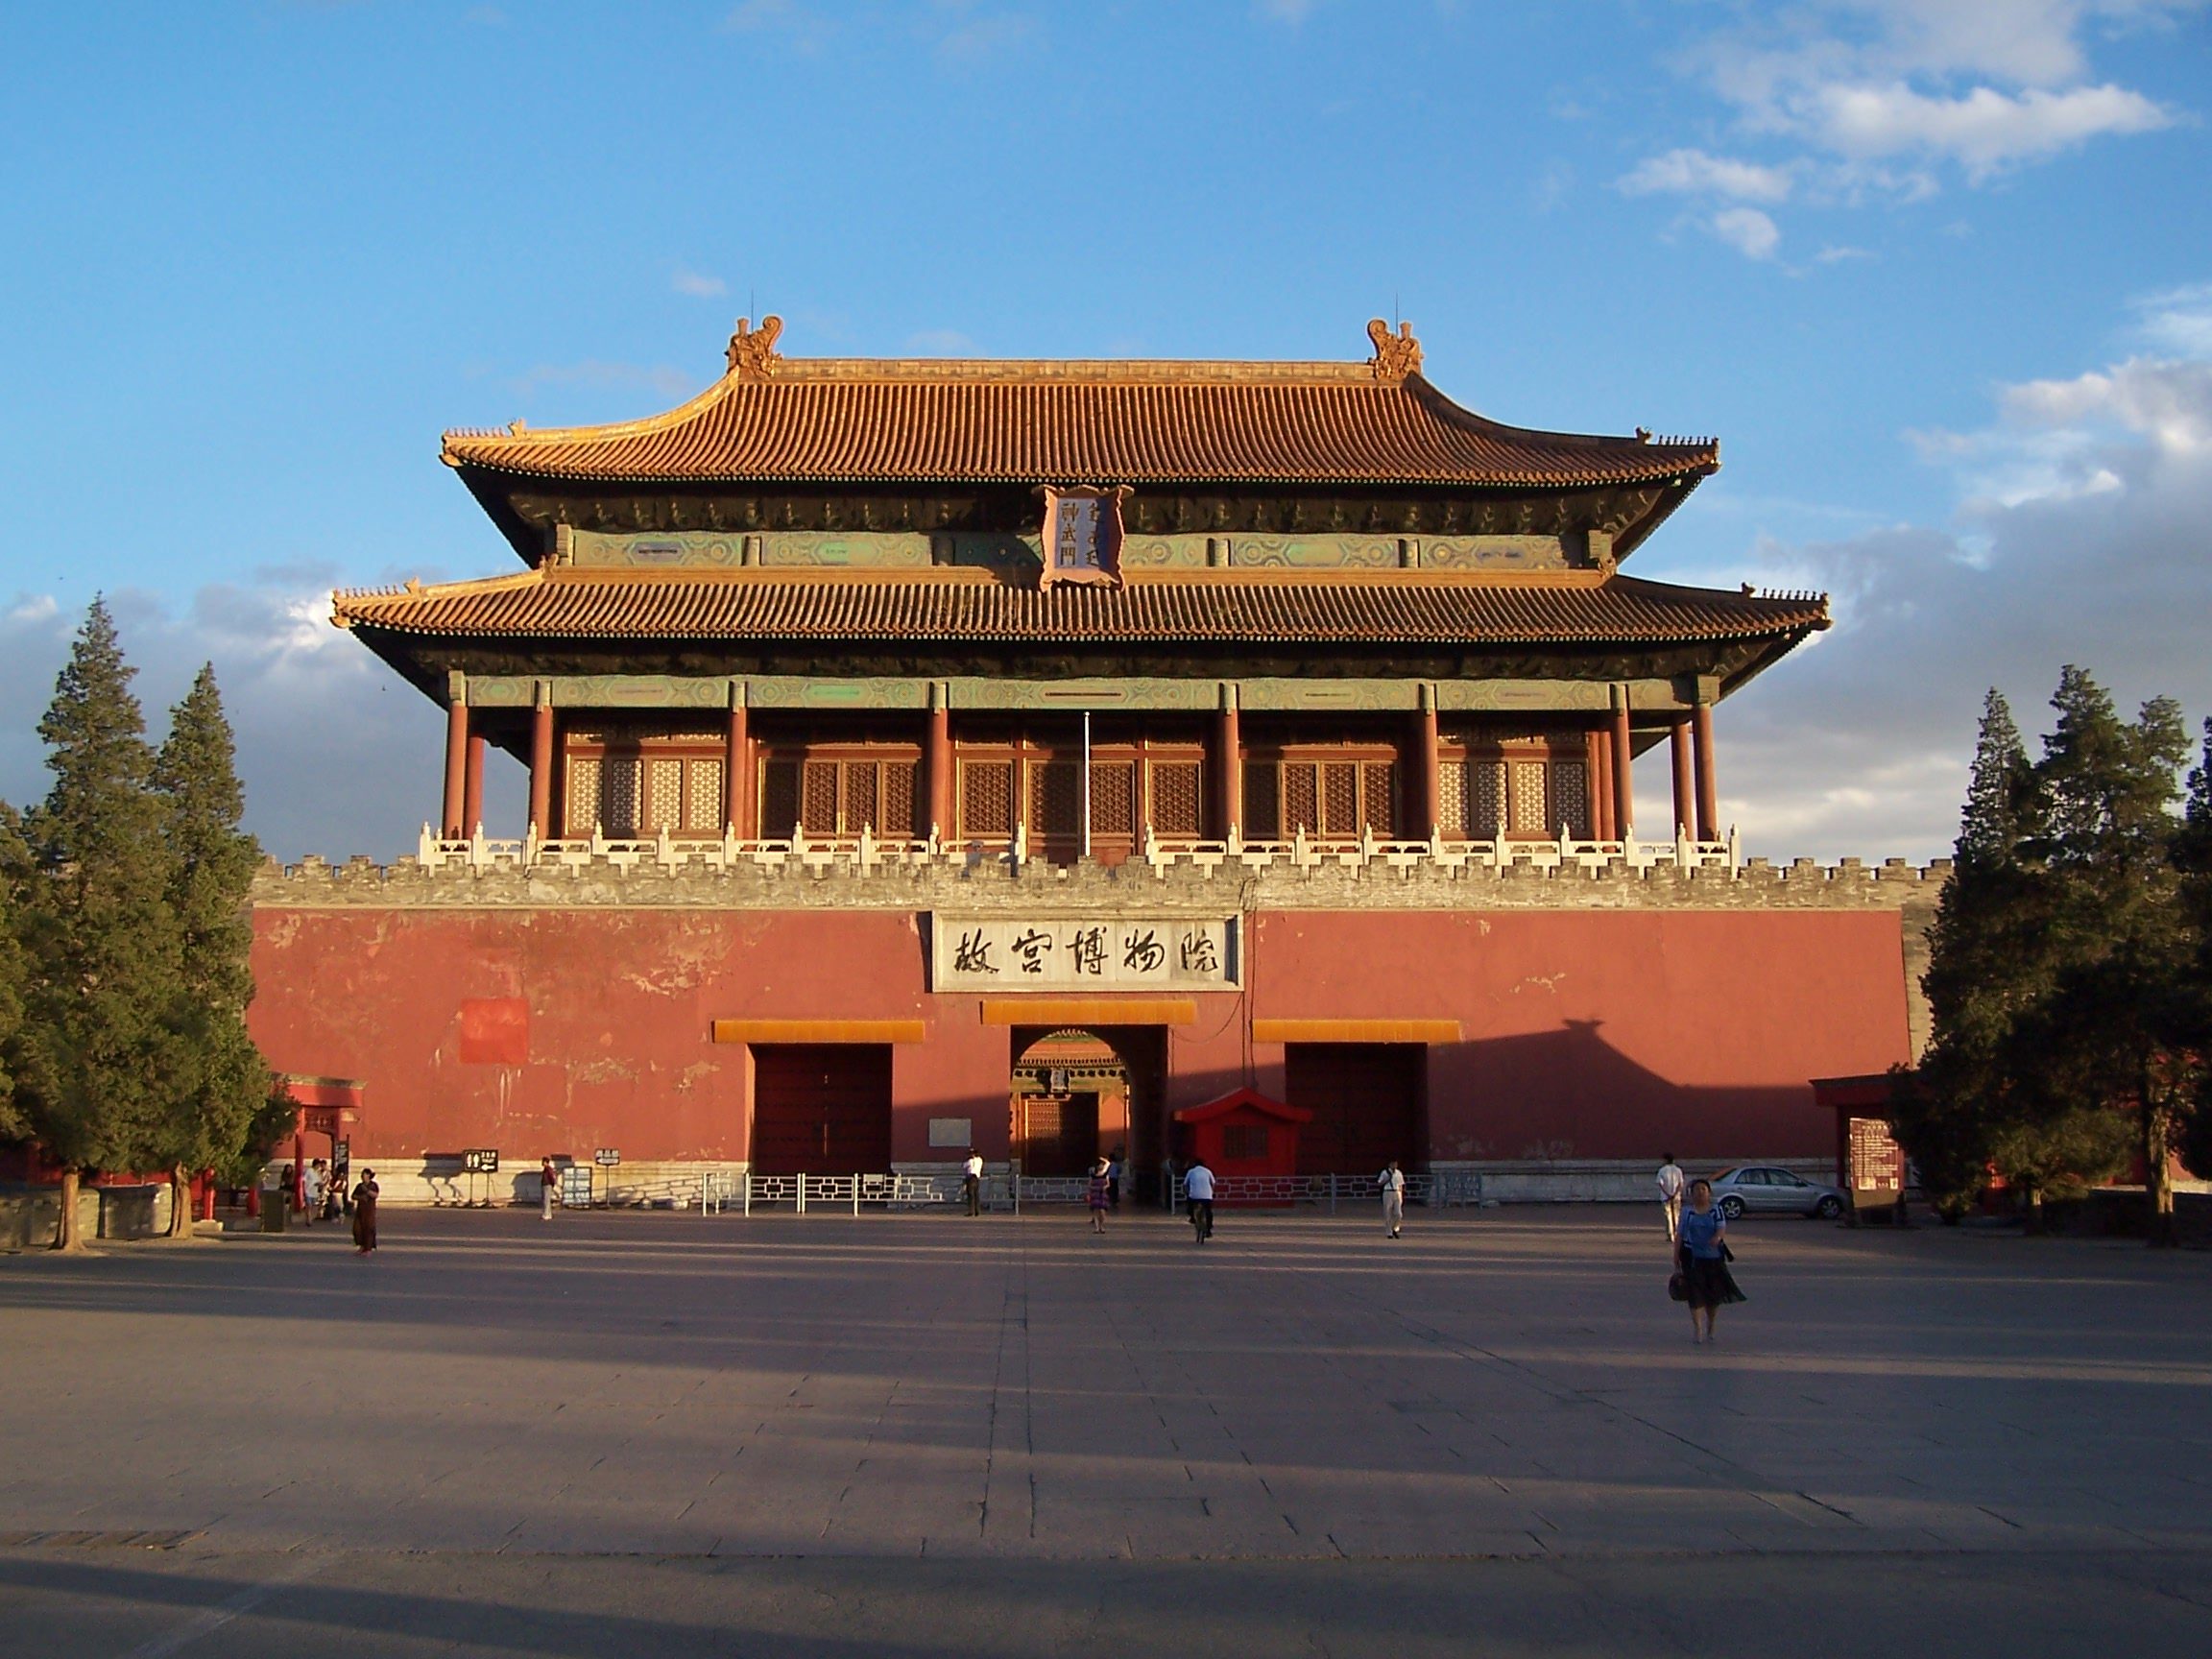 Des experts se réunissent à Yuanmou (Chine) pour discuter de la protection et de la promotion des origines de la civilisation chinoise